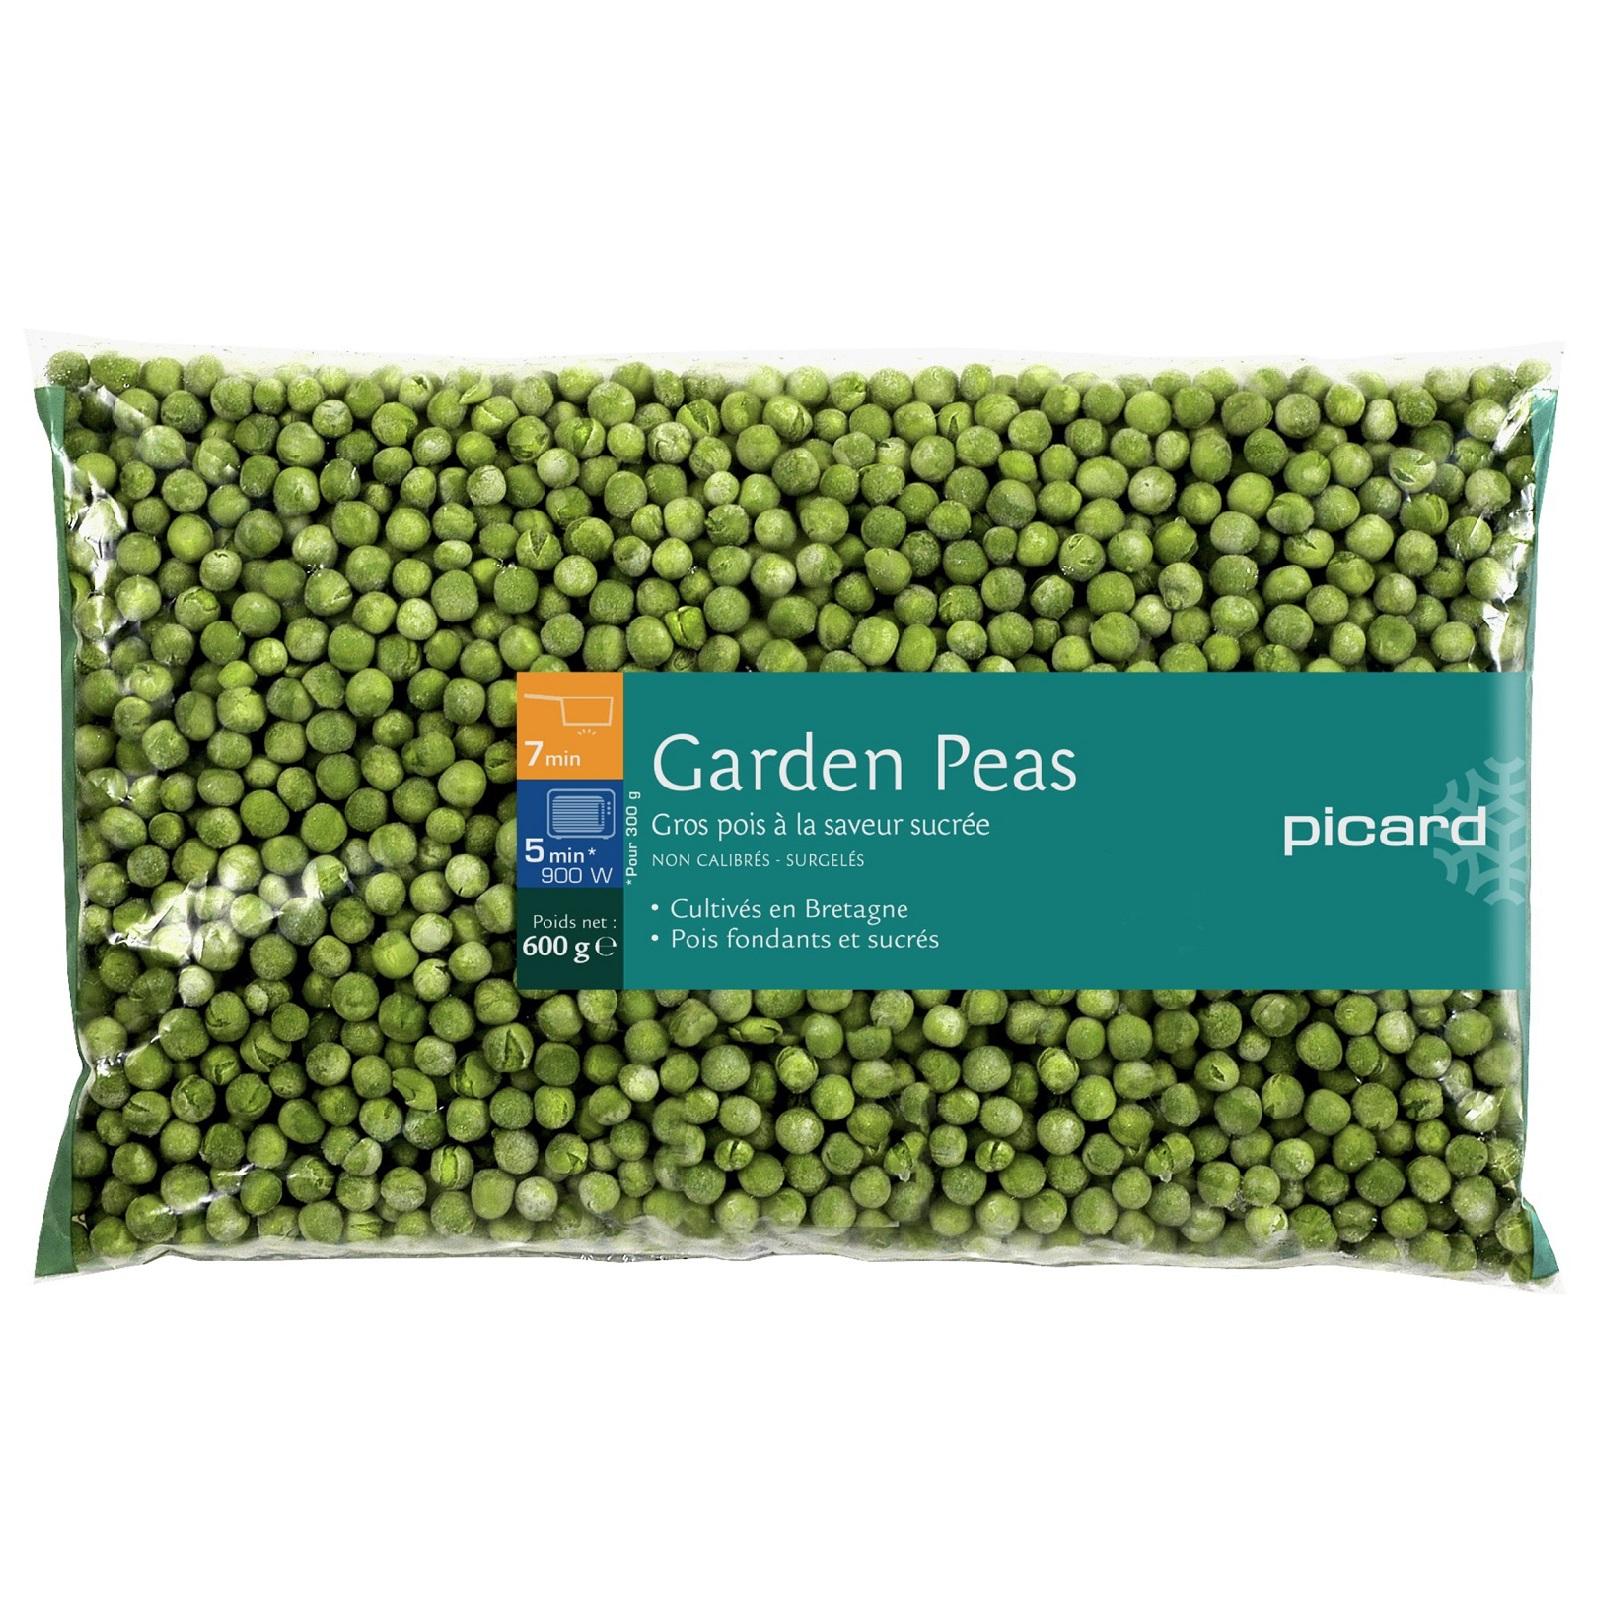 Picard Garden Peas - Frozen